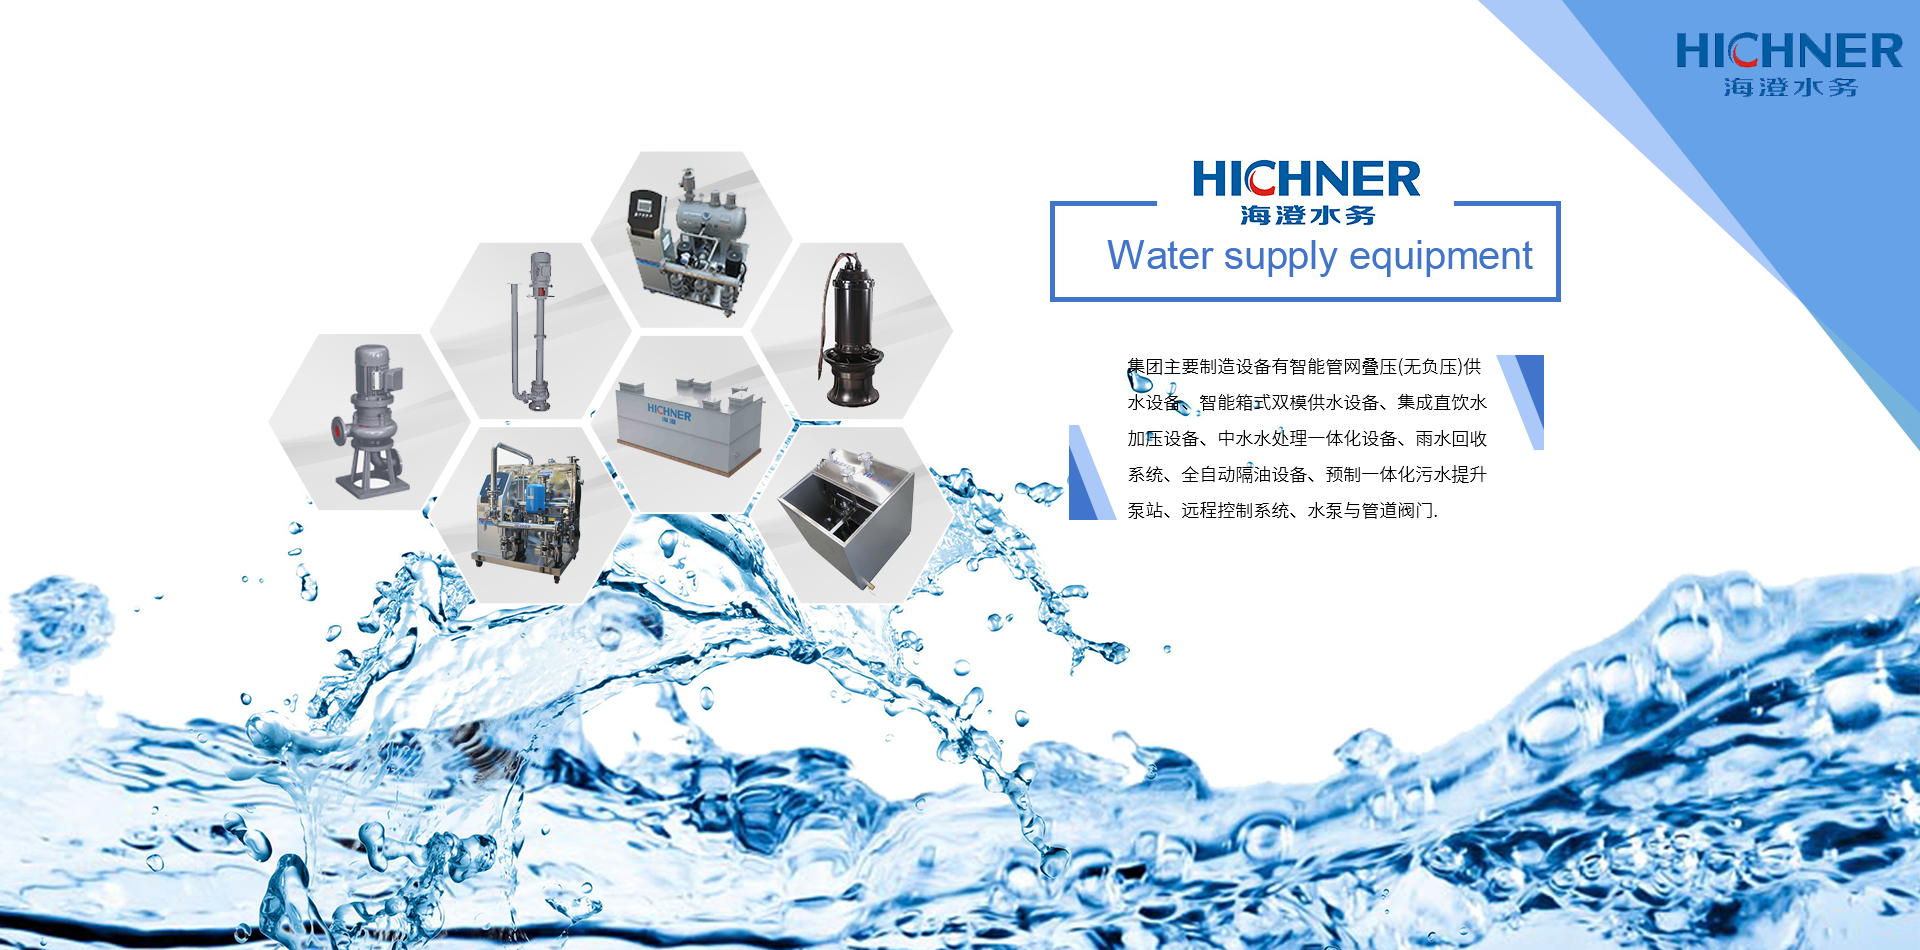 上海海澄水务科技集团有限公司